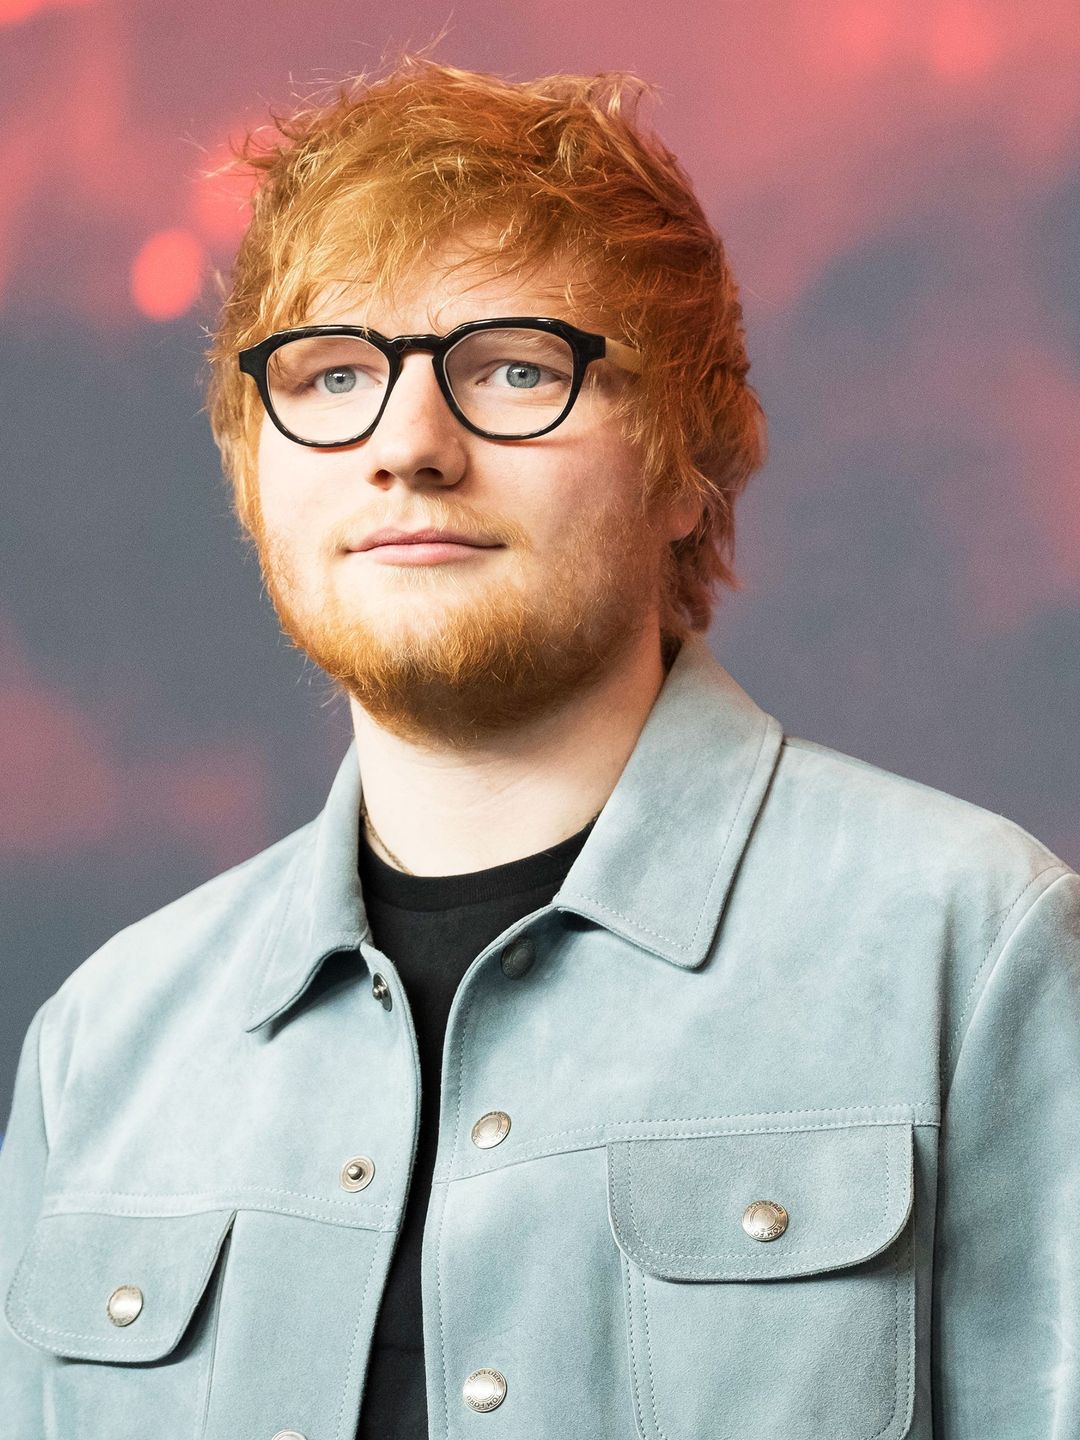 Ed Sheeran in his youth